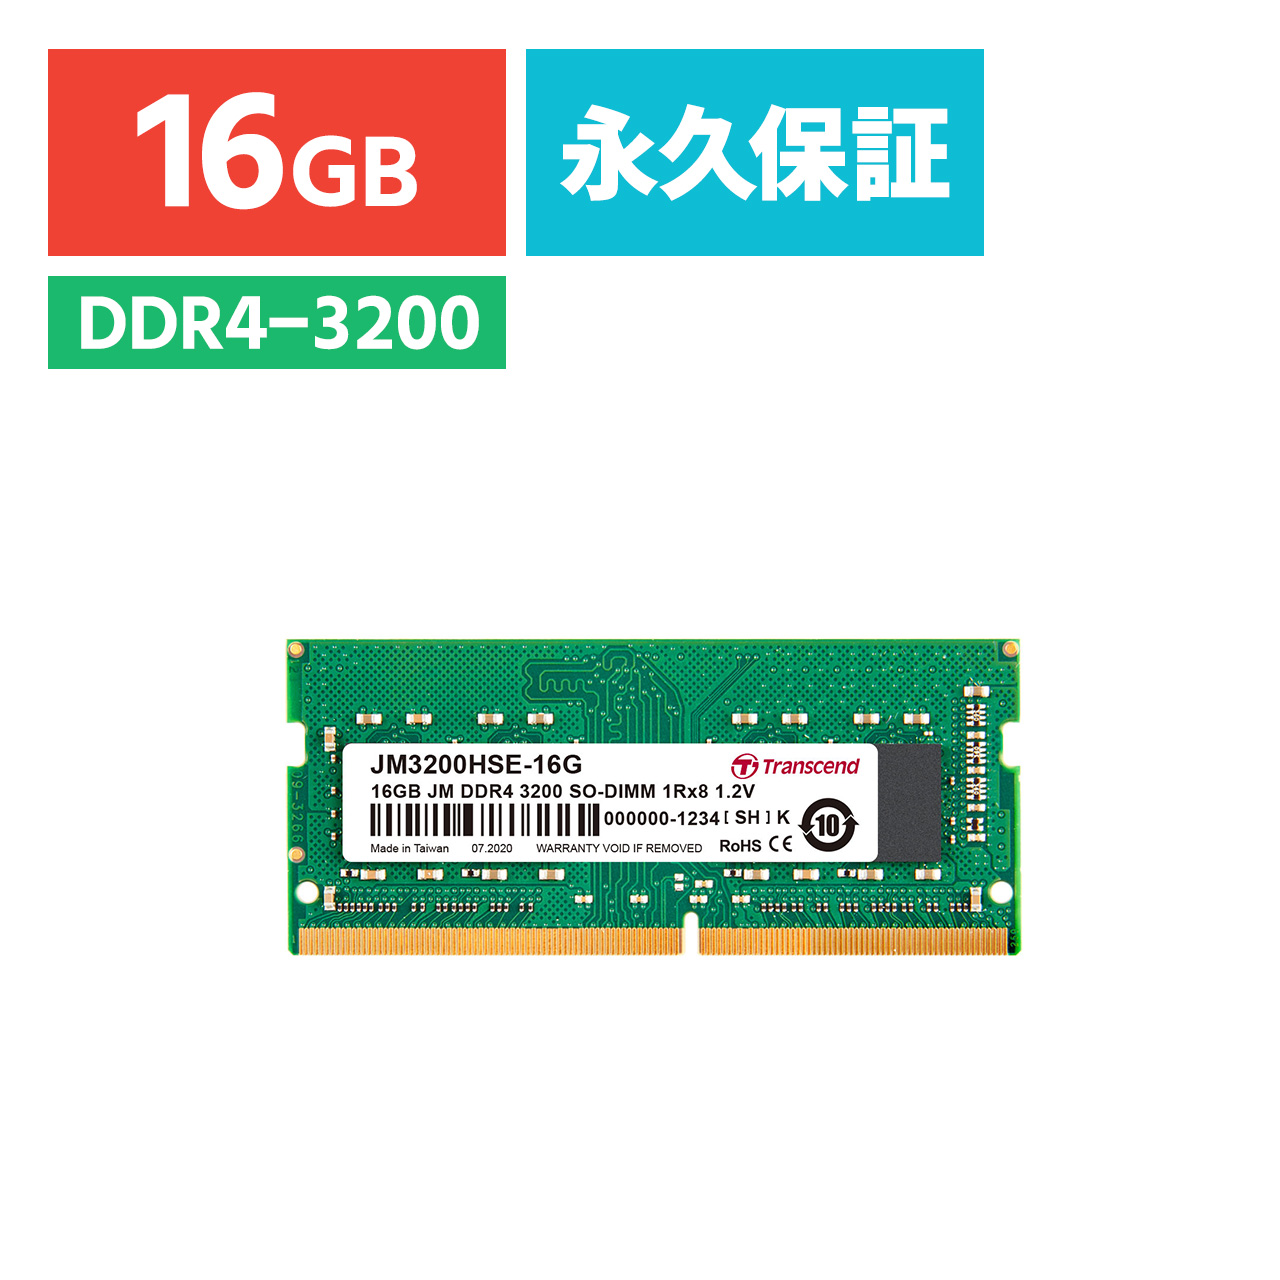 DDR4-3200